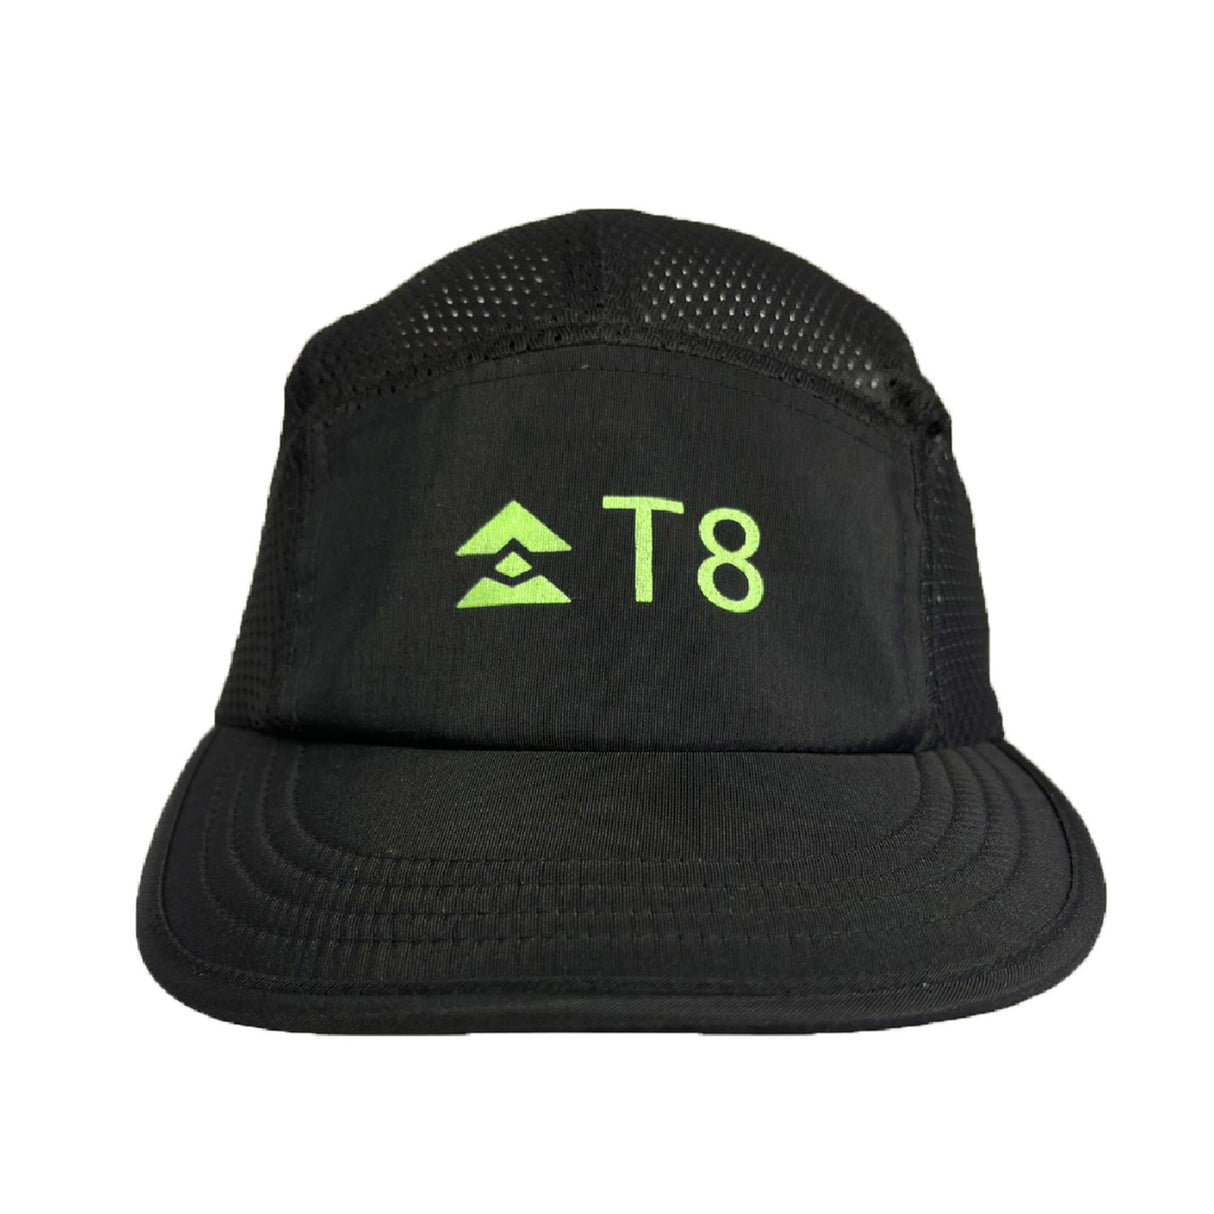 T8 5-Panel Black Cap